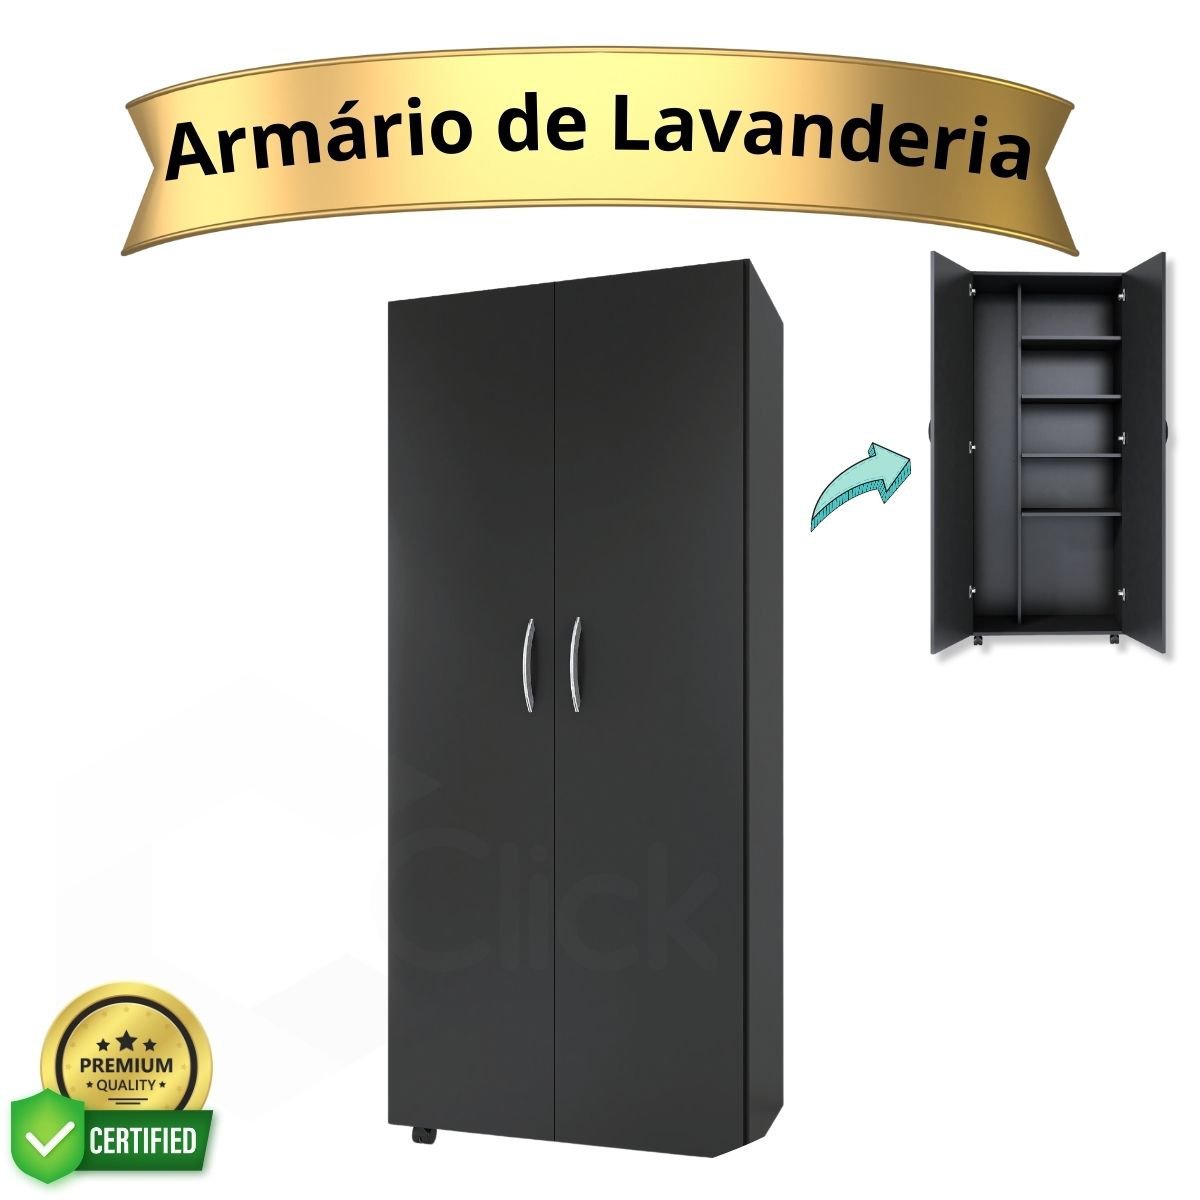 Armário Para Lavanderia Multiuso 2 Portas Alto Dispensa ClickForte Armário Lavanderia Preto - 4